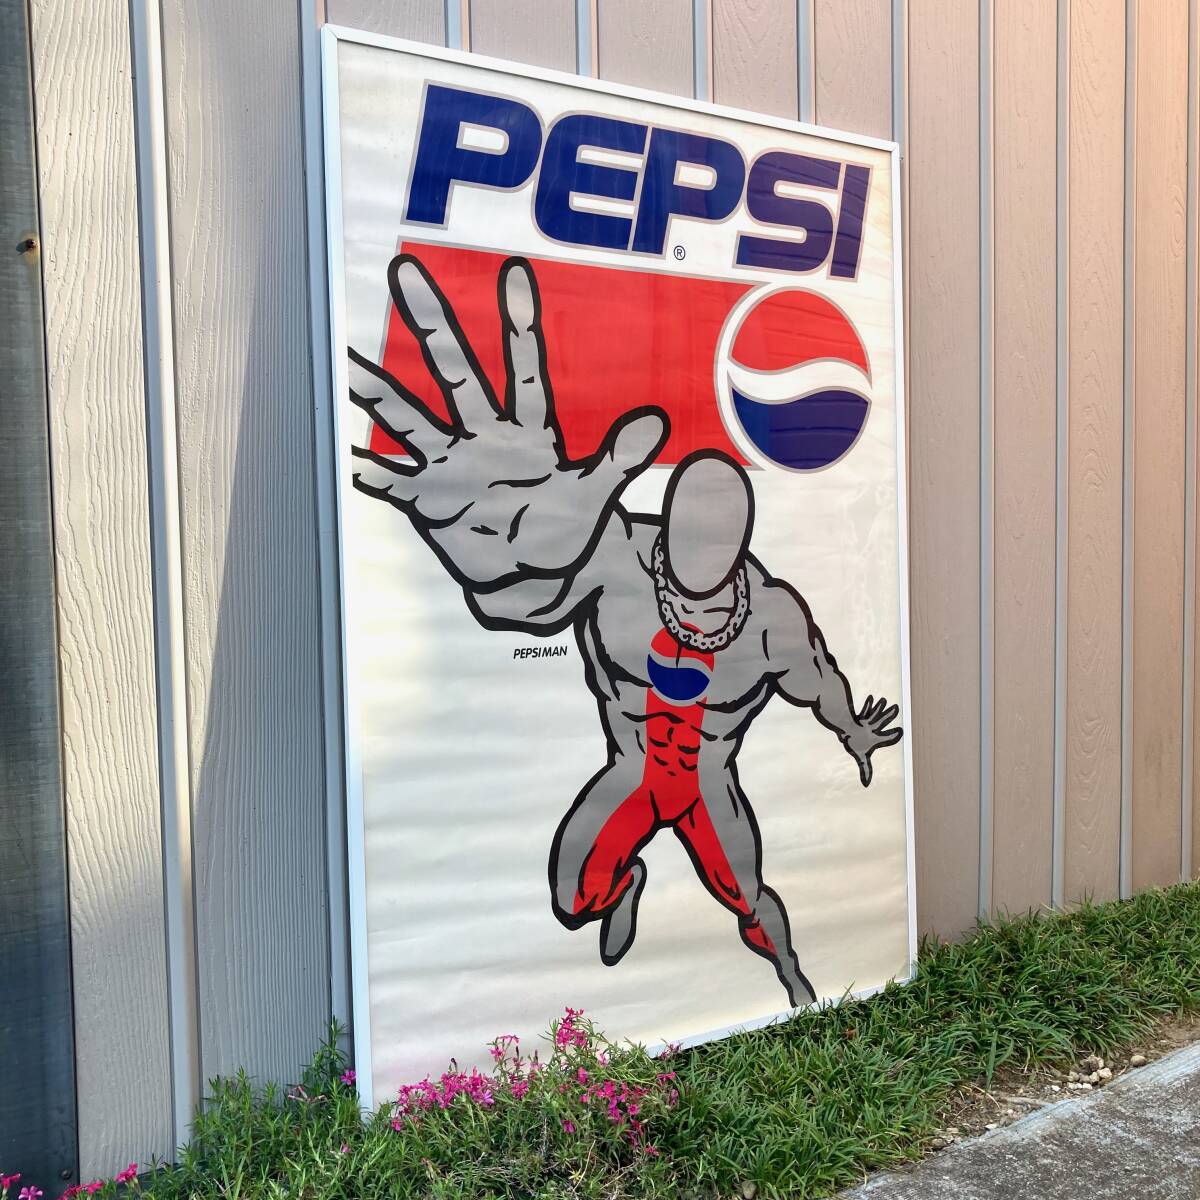 * очень редкий *90 годы быстрое решение бесплатная доставка не продается большой B1 размер постер Pepsiman магазин реклама для продвижения товара товары подлинная вещь Pepsi-Cola retro 